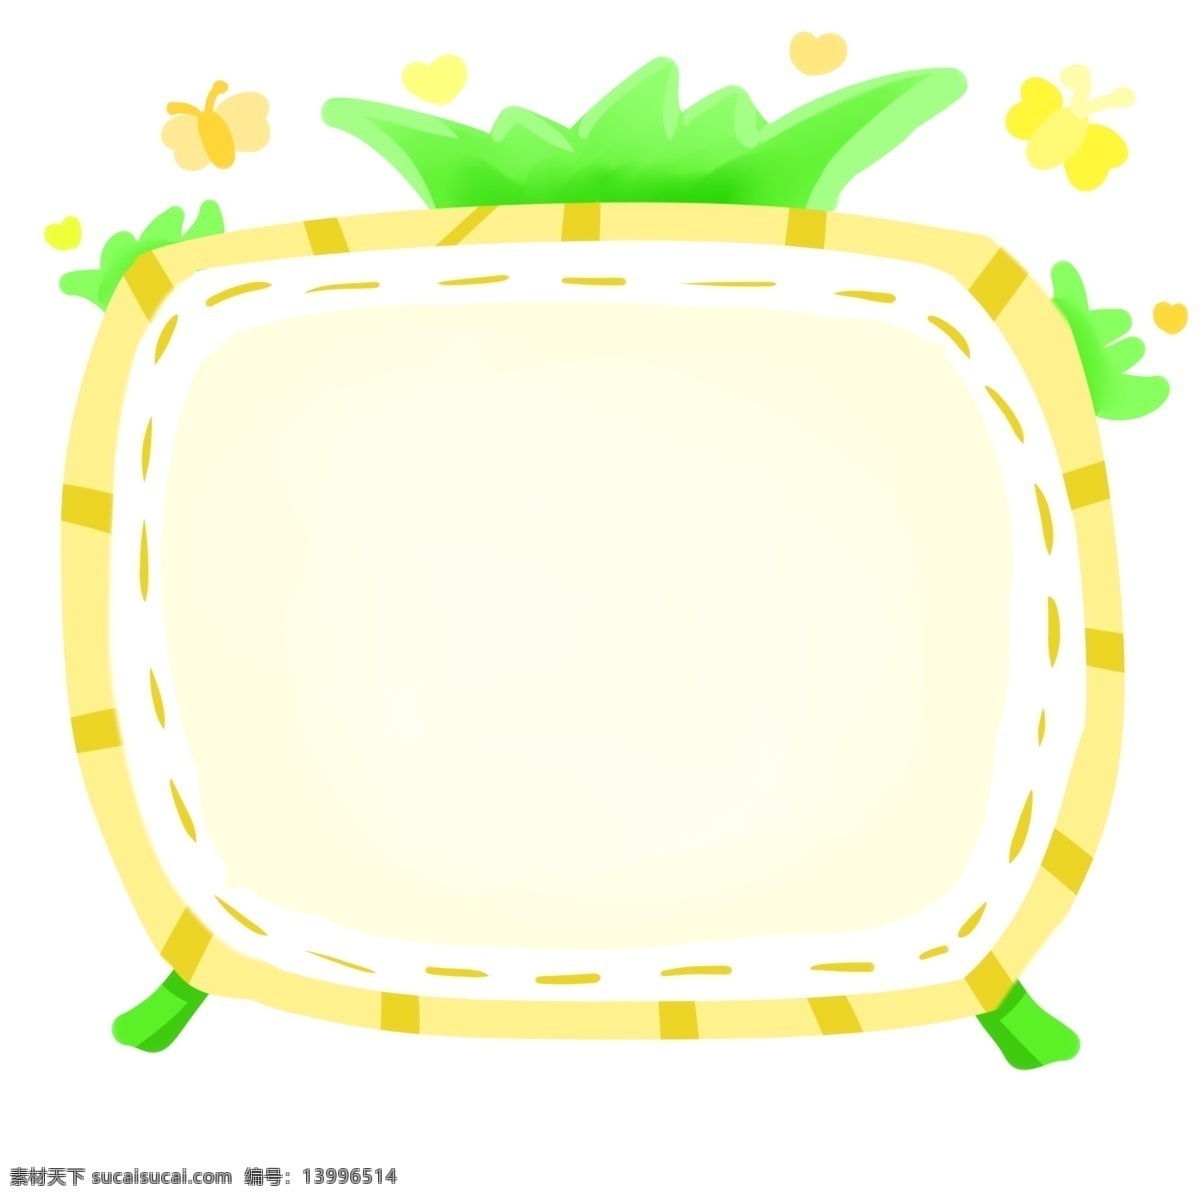 卡通 电视 边框 插图 绿色的支架 黄色的虚线 黄色的蝴蝶 白色的镜片 心形装饰 电视边框 设计边框